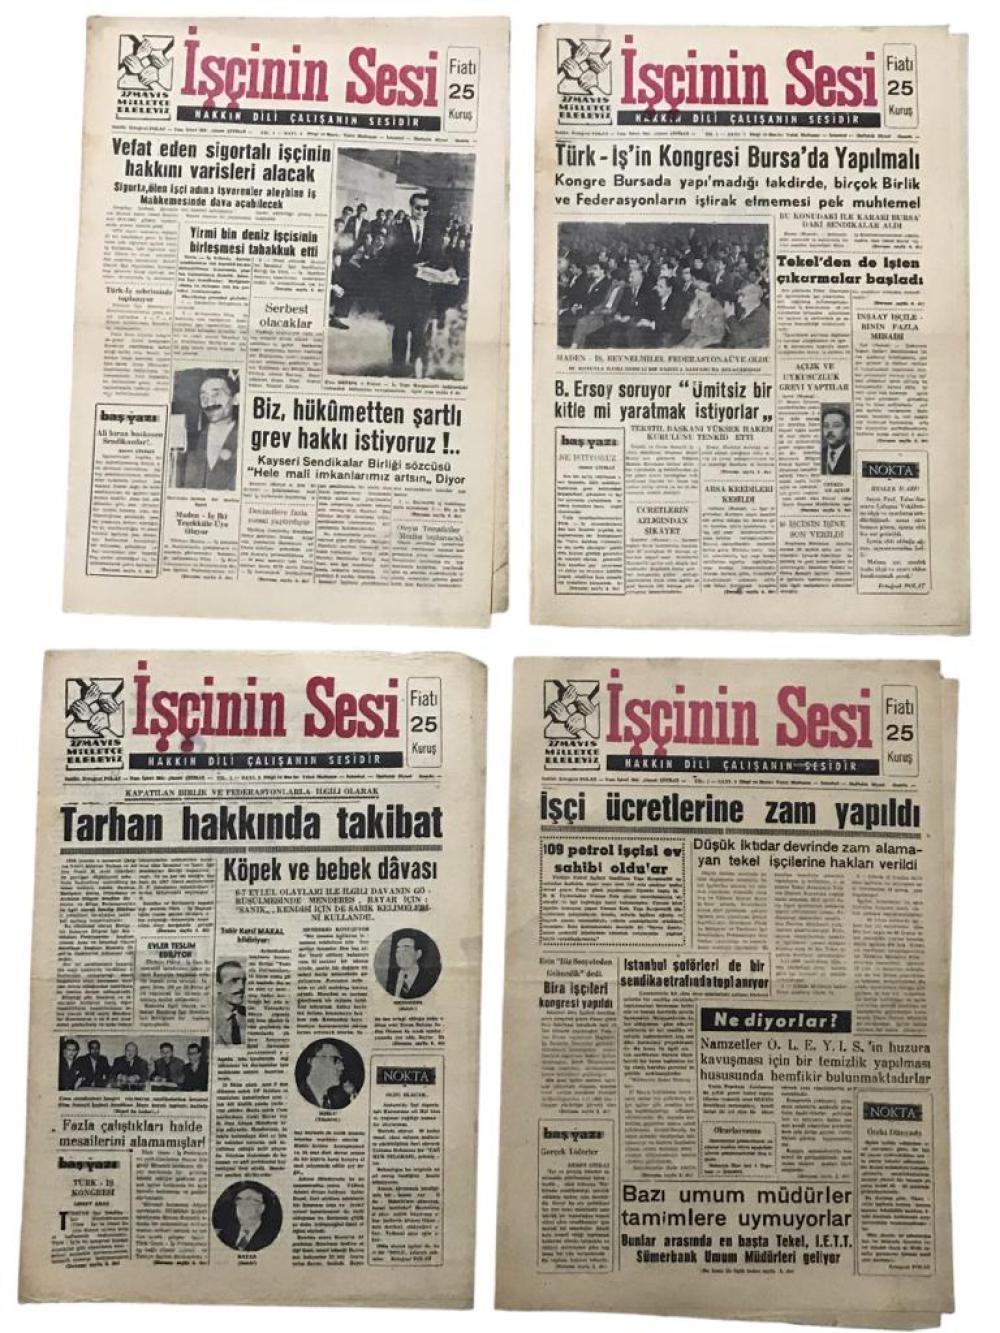  İşçinin Sesi Gazetesi 1960 - 8 sayı 